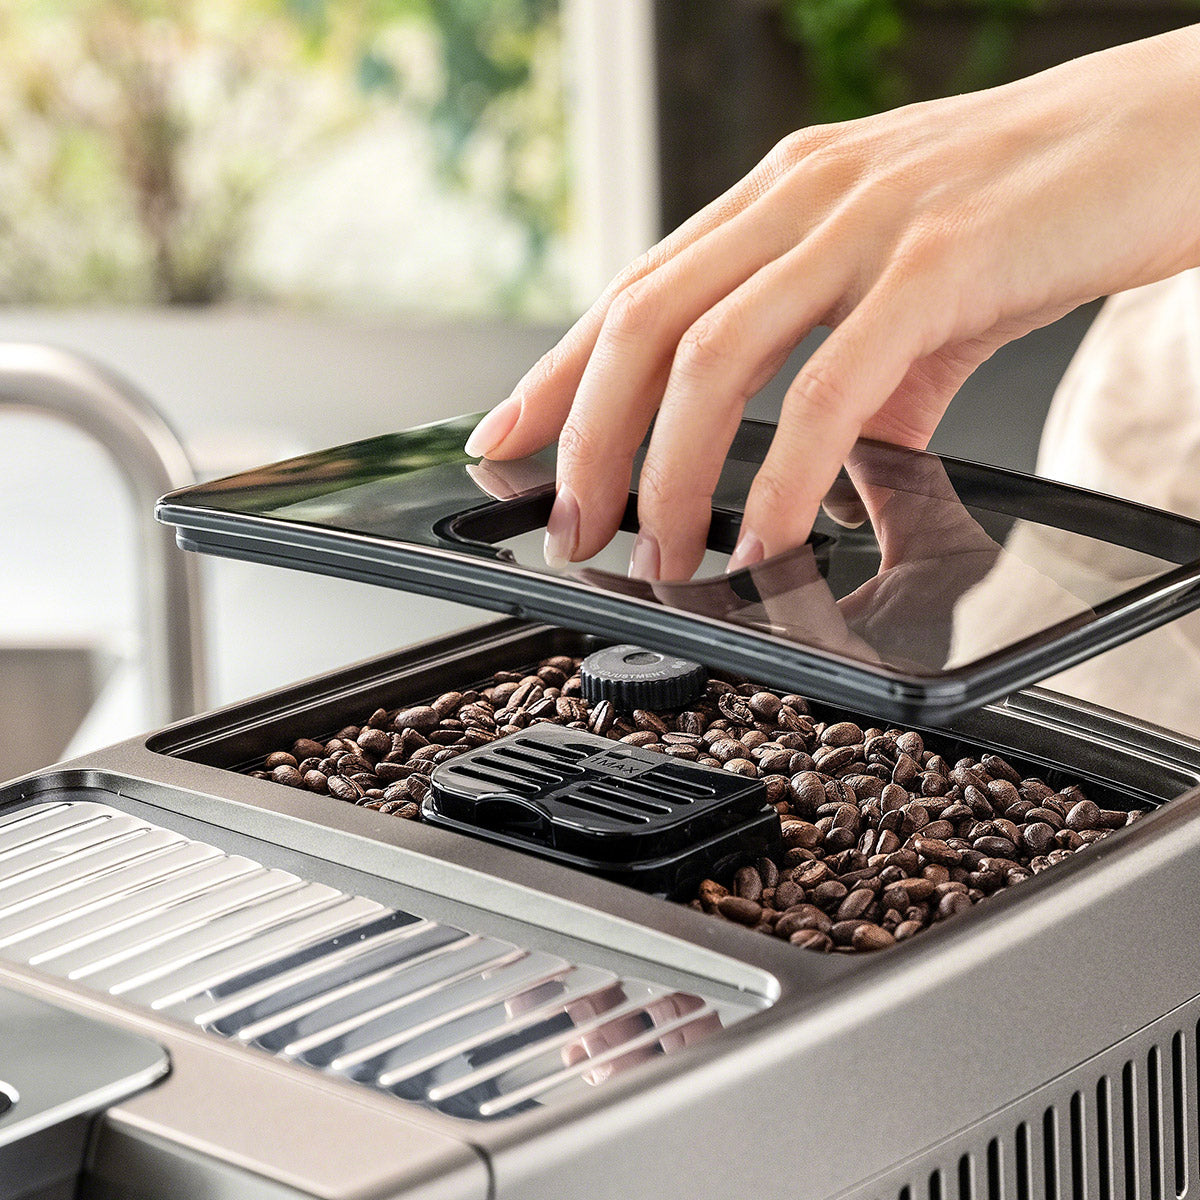  DeLonghi Dinamica ECAM35075 - Máquina de café espresso súper  automática, capuchino y cafetera con espumador de leche y sistema  LatteCremma, ECAM35075, acero inoxidable : Hogar y Cocina